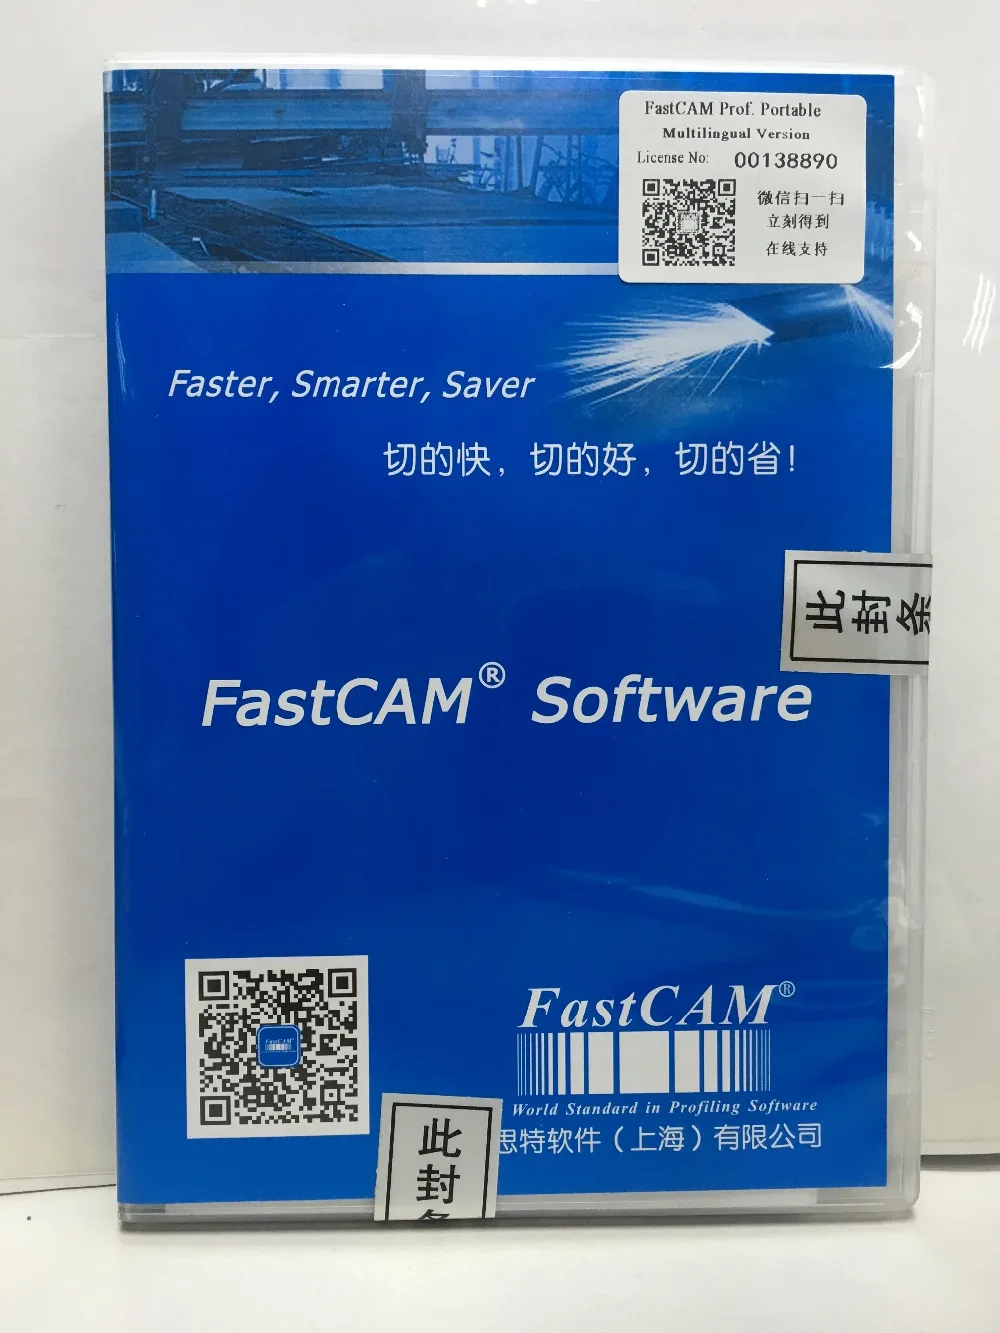 

Автомобильное гнездовое программное обеспечение FastCAM Pro портативная версия для машины плазменной резки